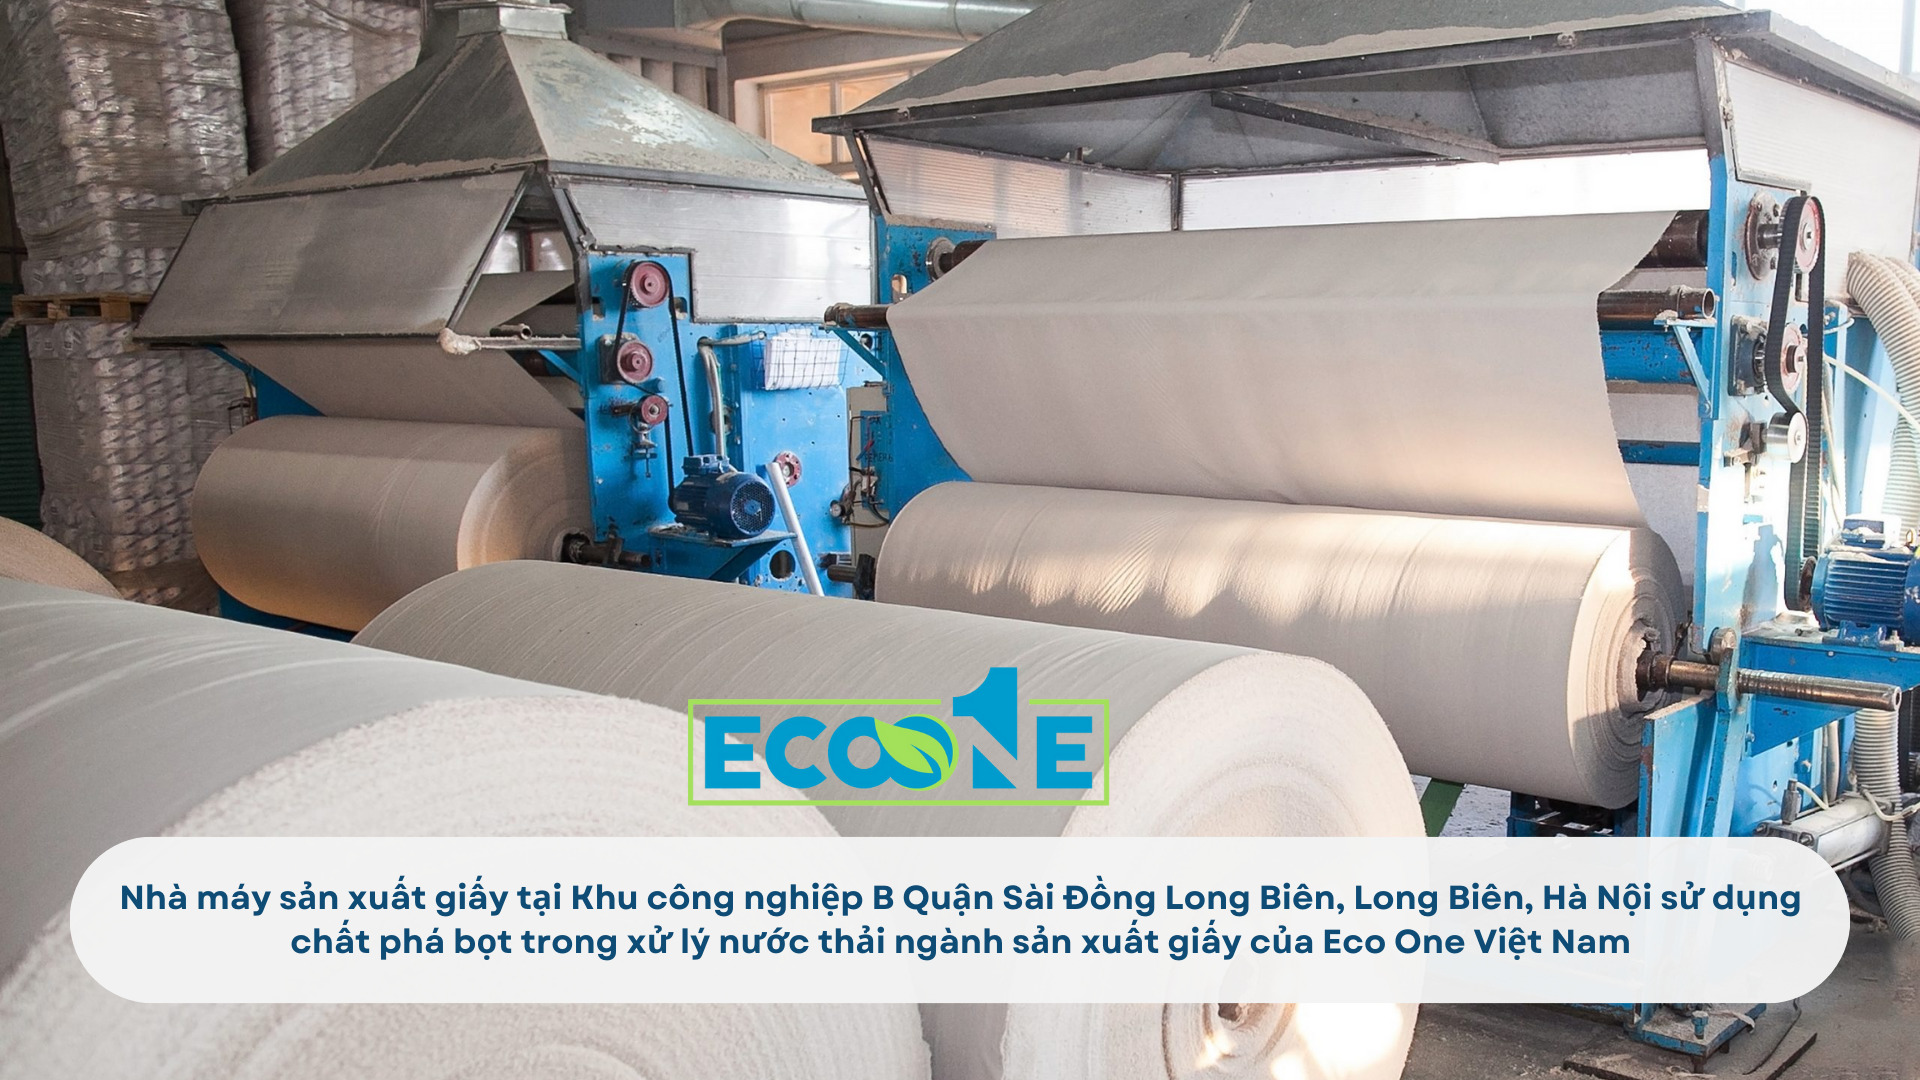 Nhà máy sản xuất giấy tại Khu công nghiệp B Quận Sài Đồng Long Biên, Long Biên, Hà Nội sử dụng chất phá bọt trong xử lý nước thải ngành sản xuất giấy của Eco One Việt Nam